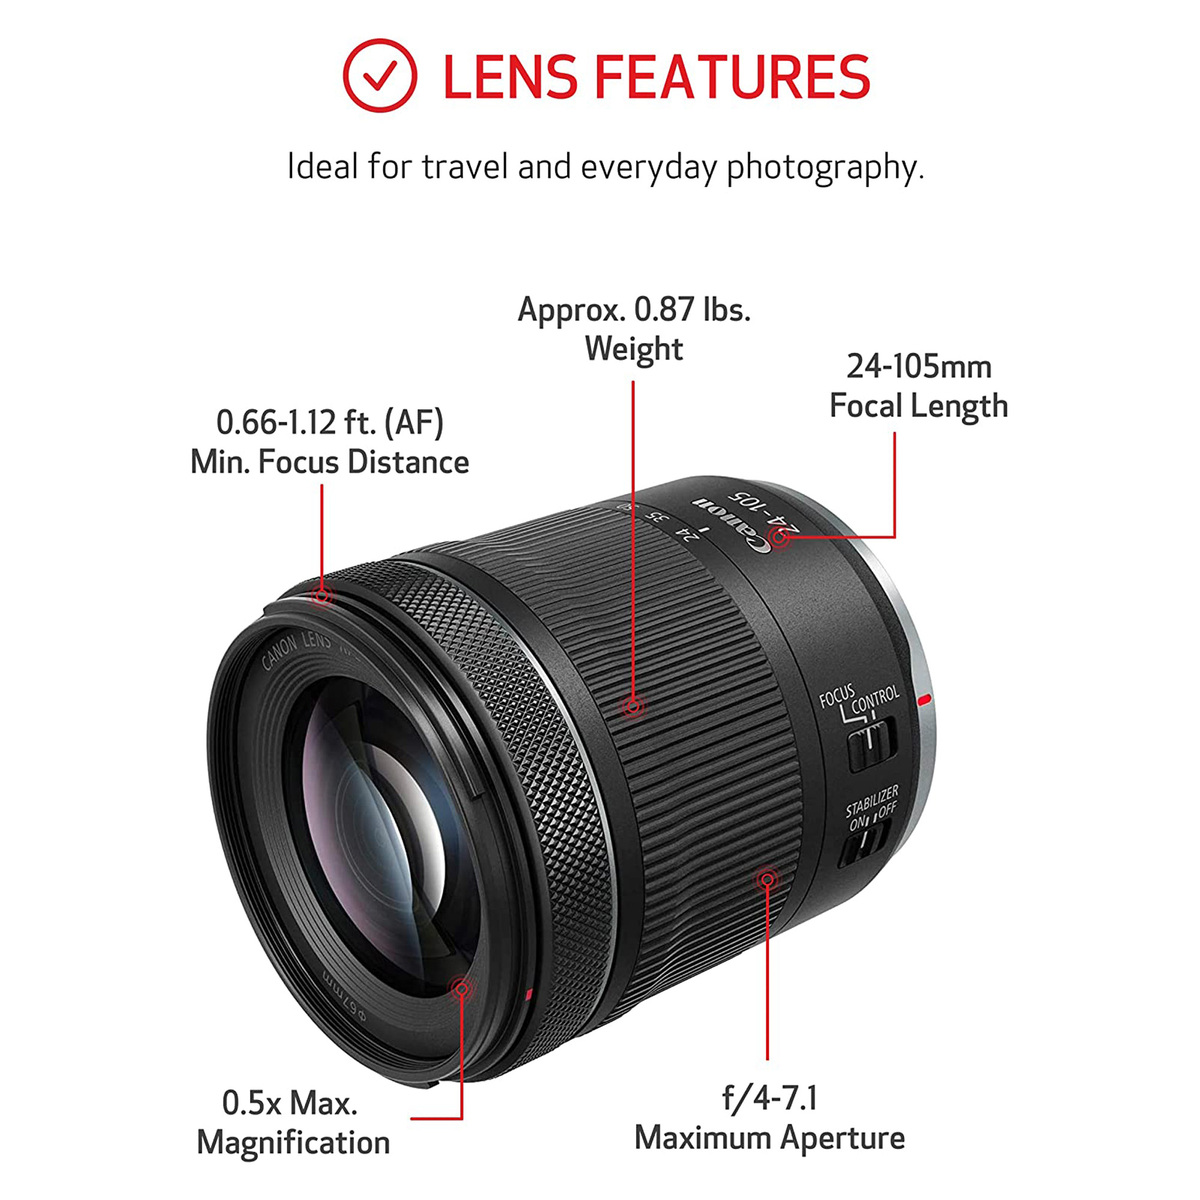 Canon EOS R6 RF24-105mm F4-7.1 IS STM Lens Kit